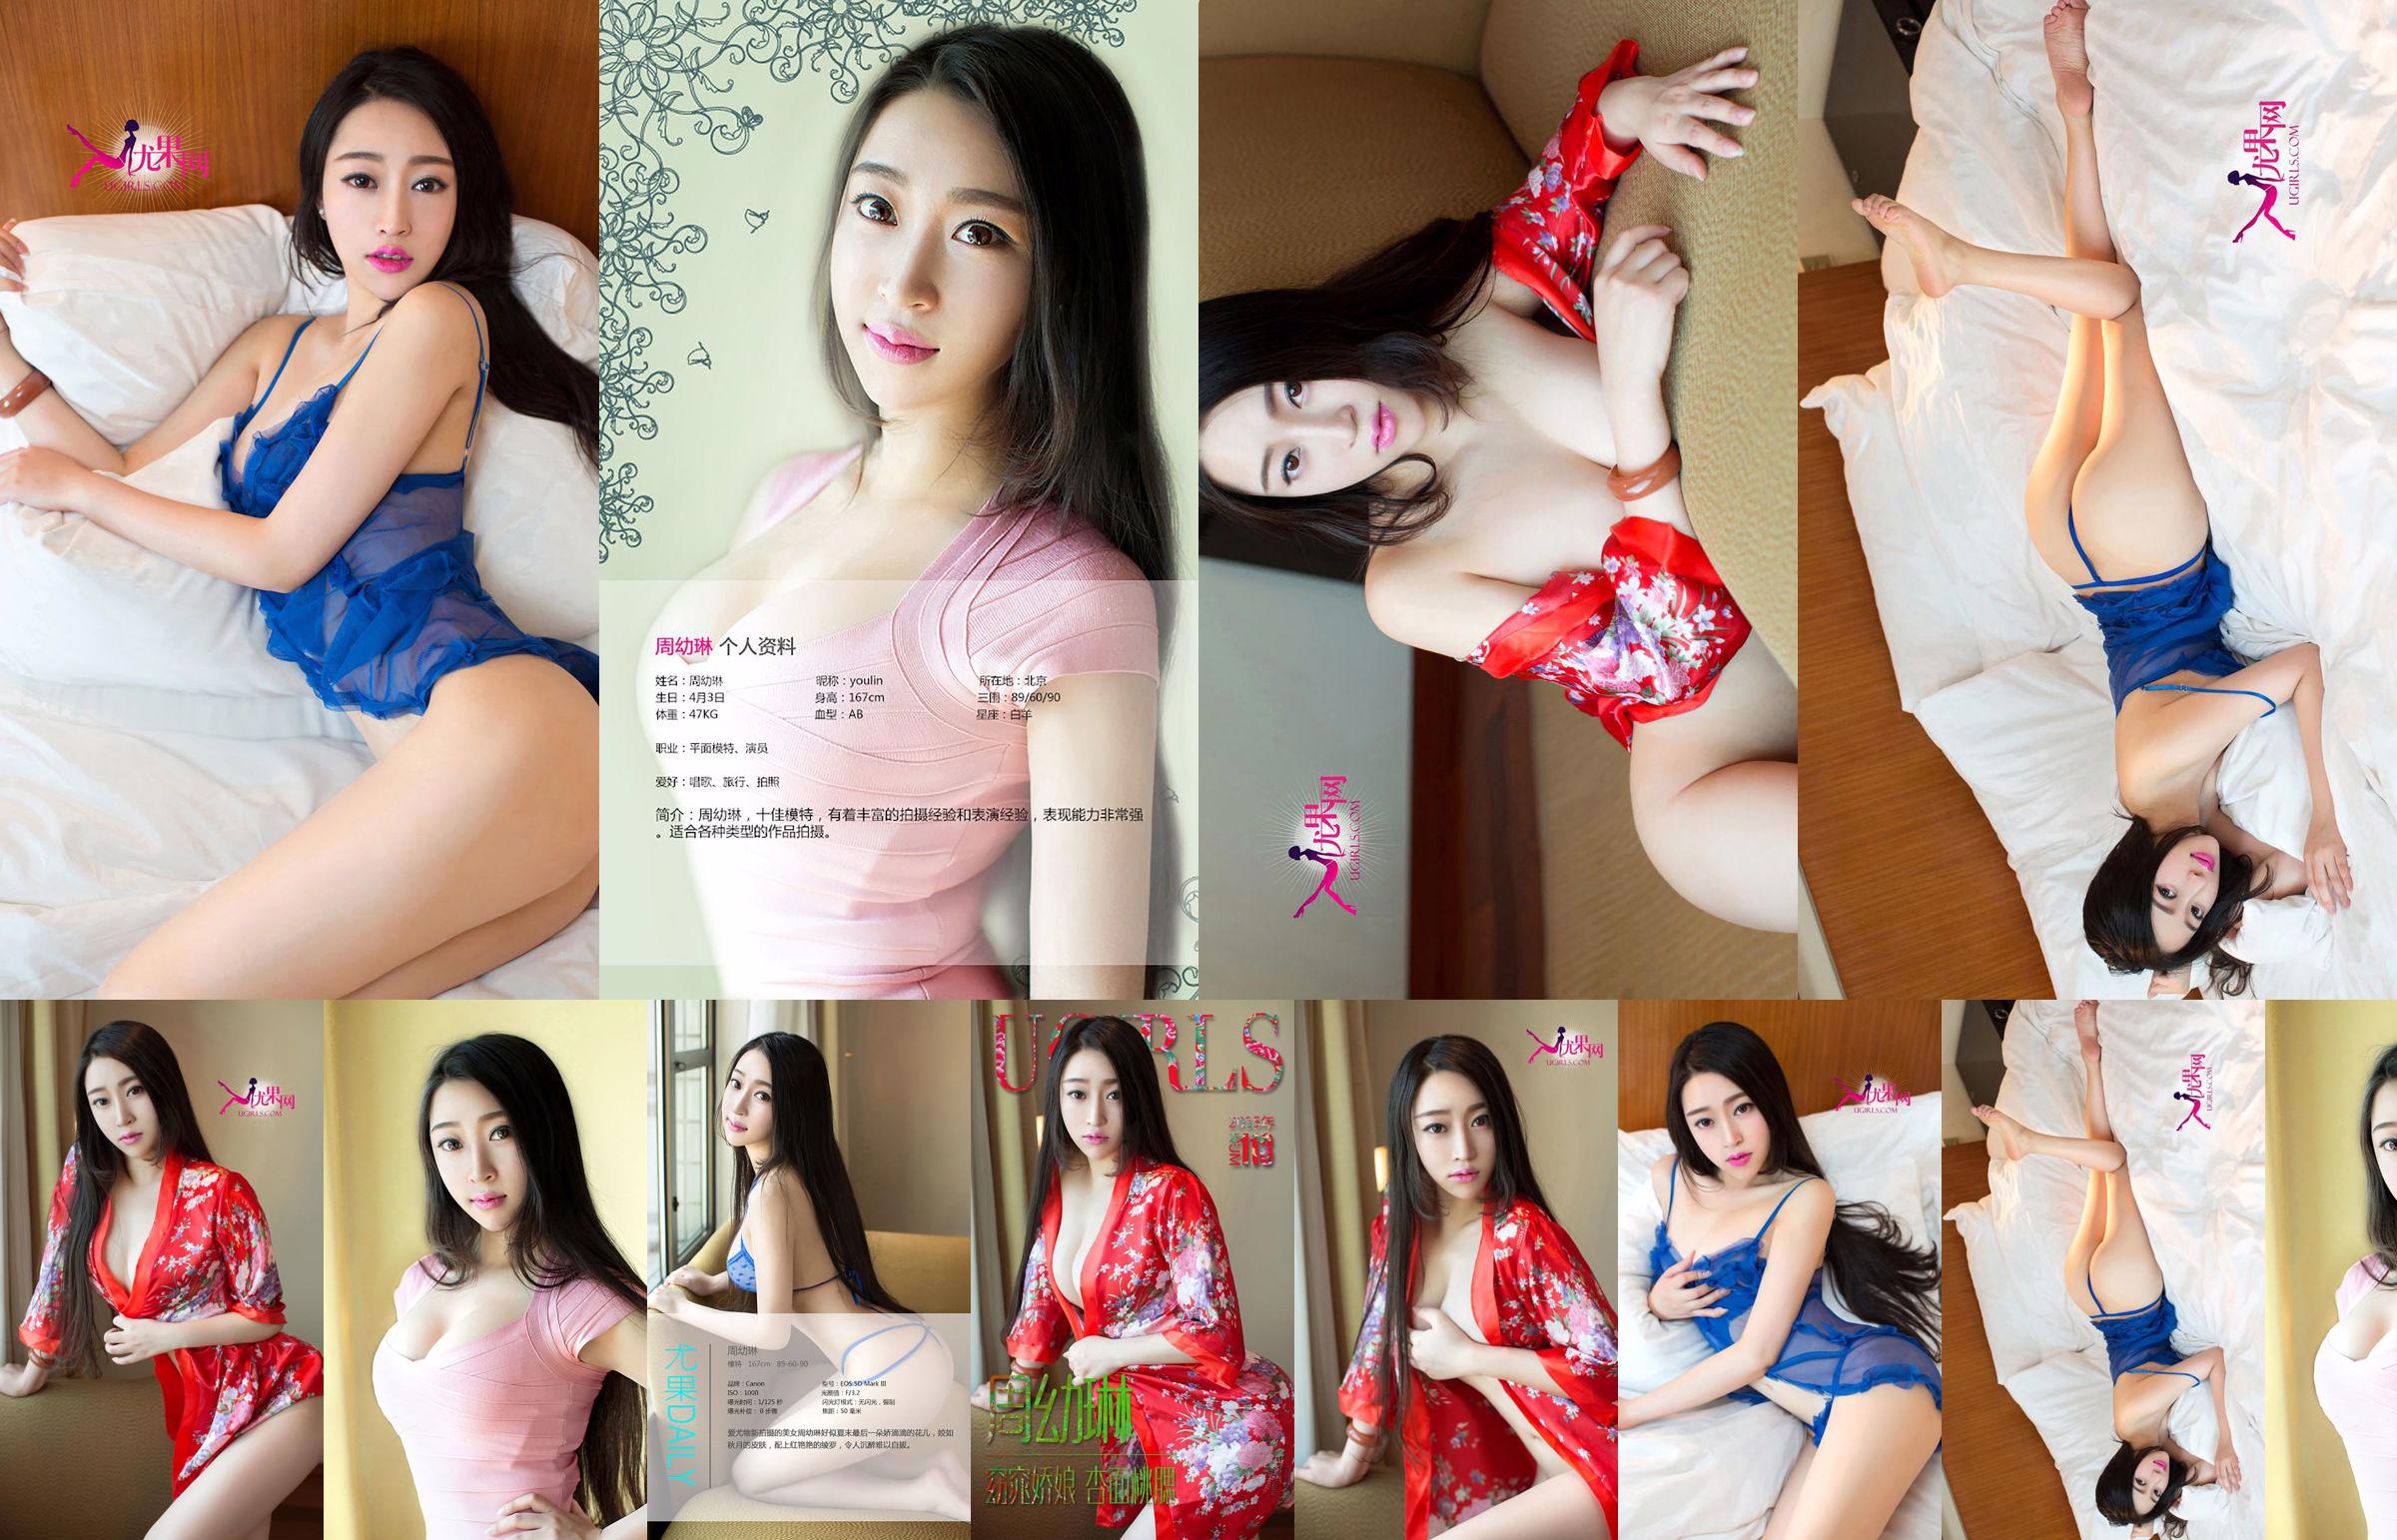 Zhou Youlin "Một cô gái xinh đẹp với khuôn mặt hoa mai và đôi má đào" [Love Youwu Ugirls] No.113 No.c33d34 Trang 1